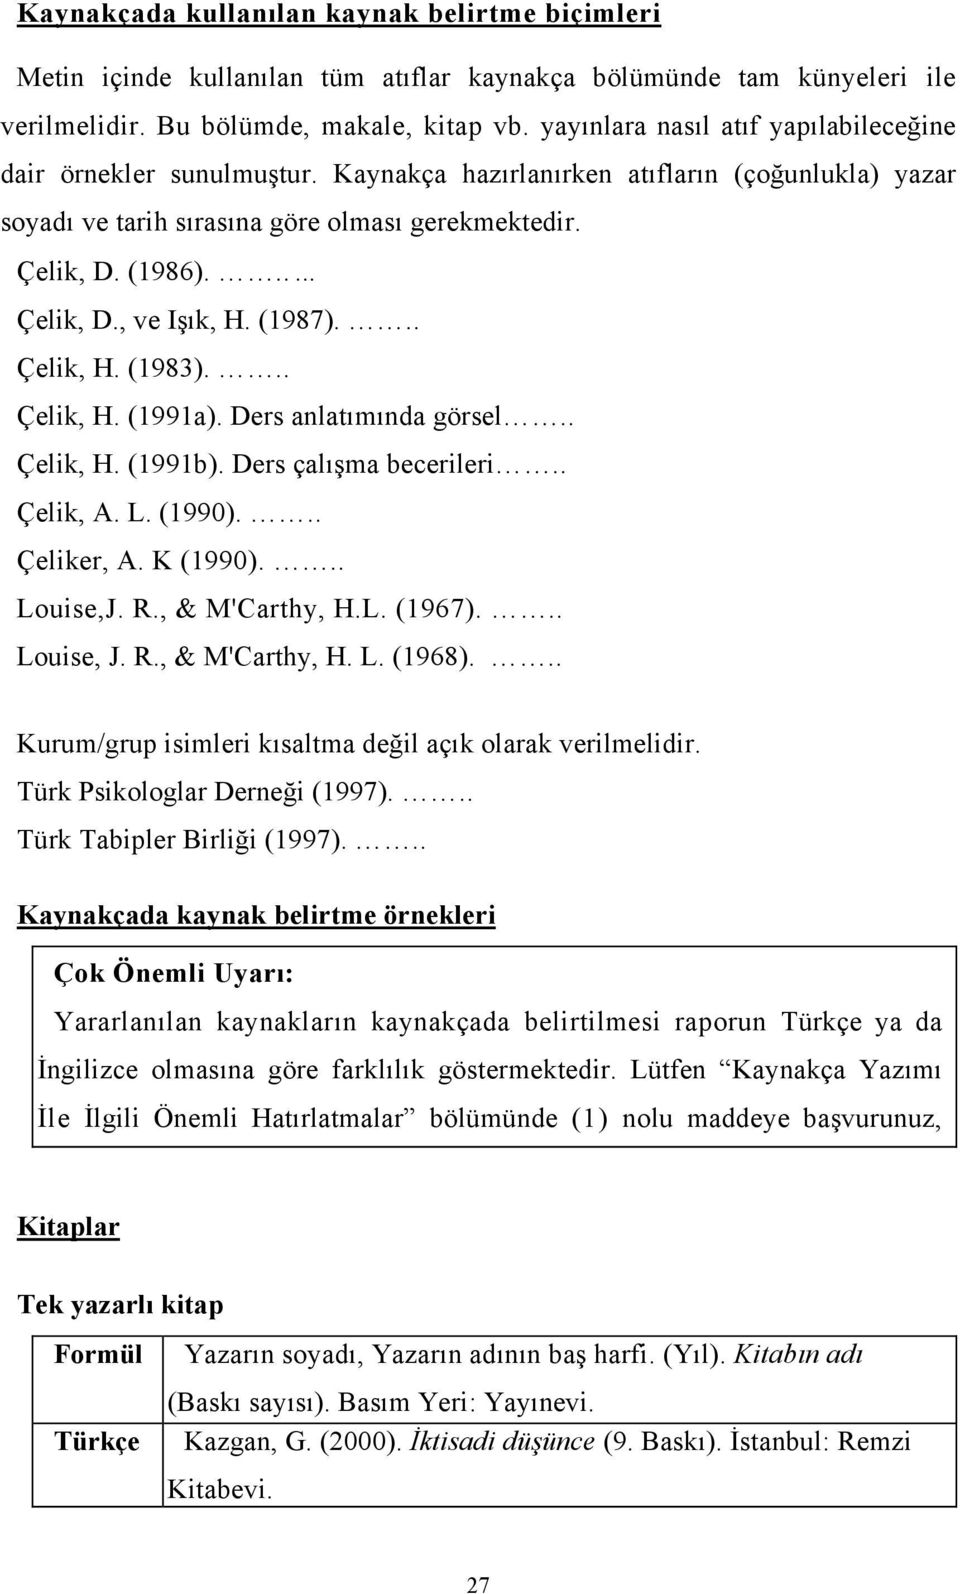 (1987)... Çelik, H. (1983)... Çelik, H. (1991a). Ders anlatımında görsel.. Çelik, H. (1991b). Ders çalışma becerileri.. Çelik, A. L. (1990)... Çeliker, A. K (1990)... Louise,J. R., & M'Carthy, H.L. (1967).